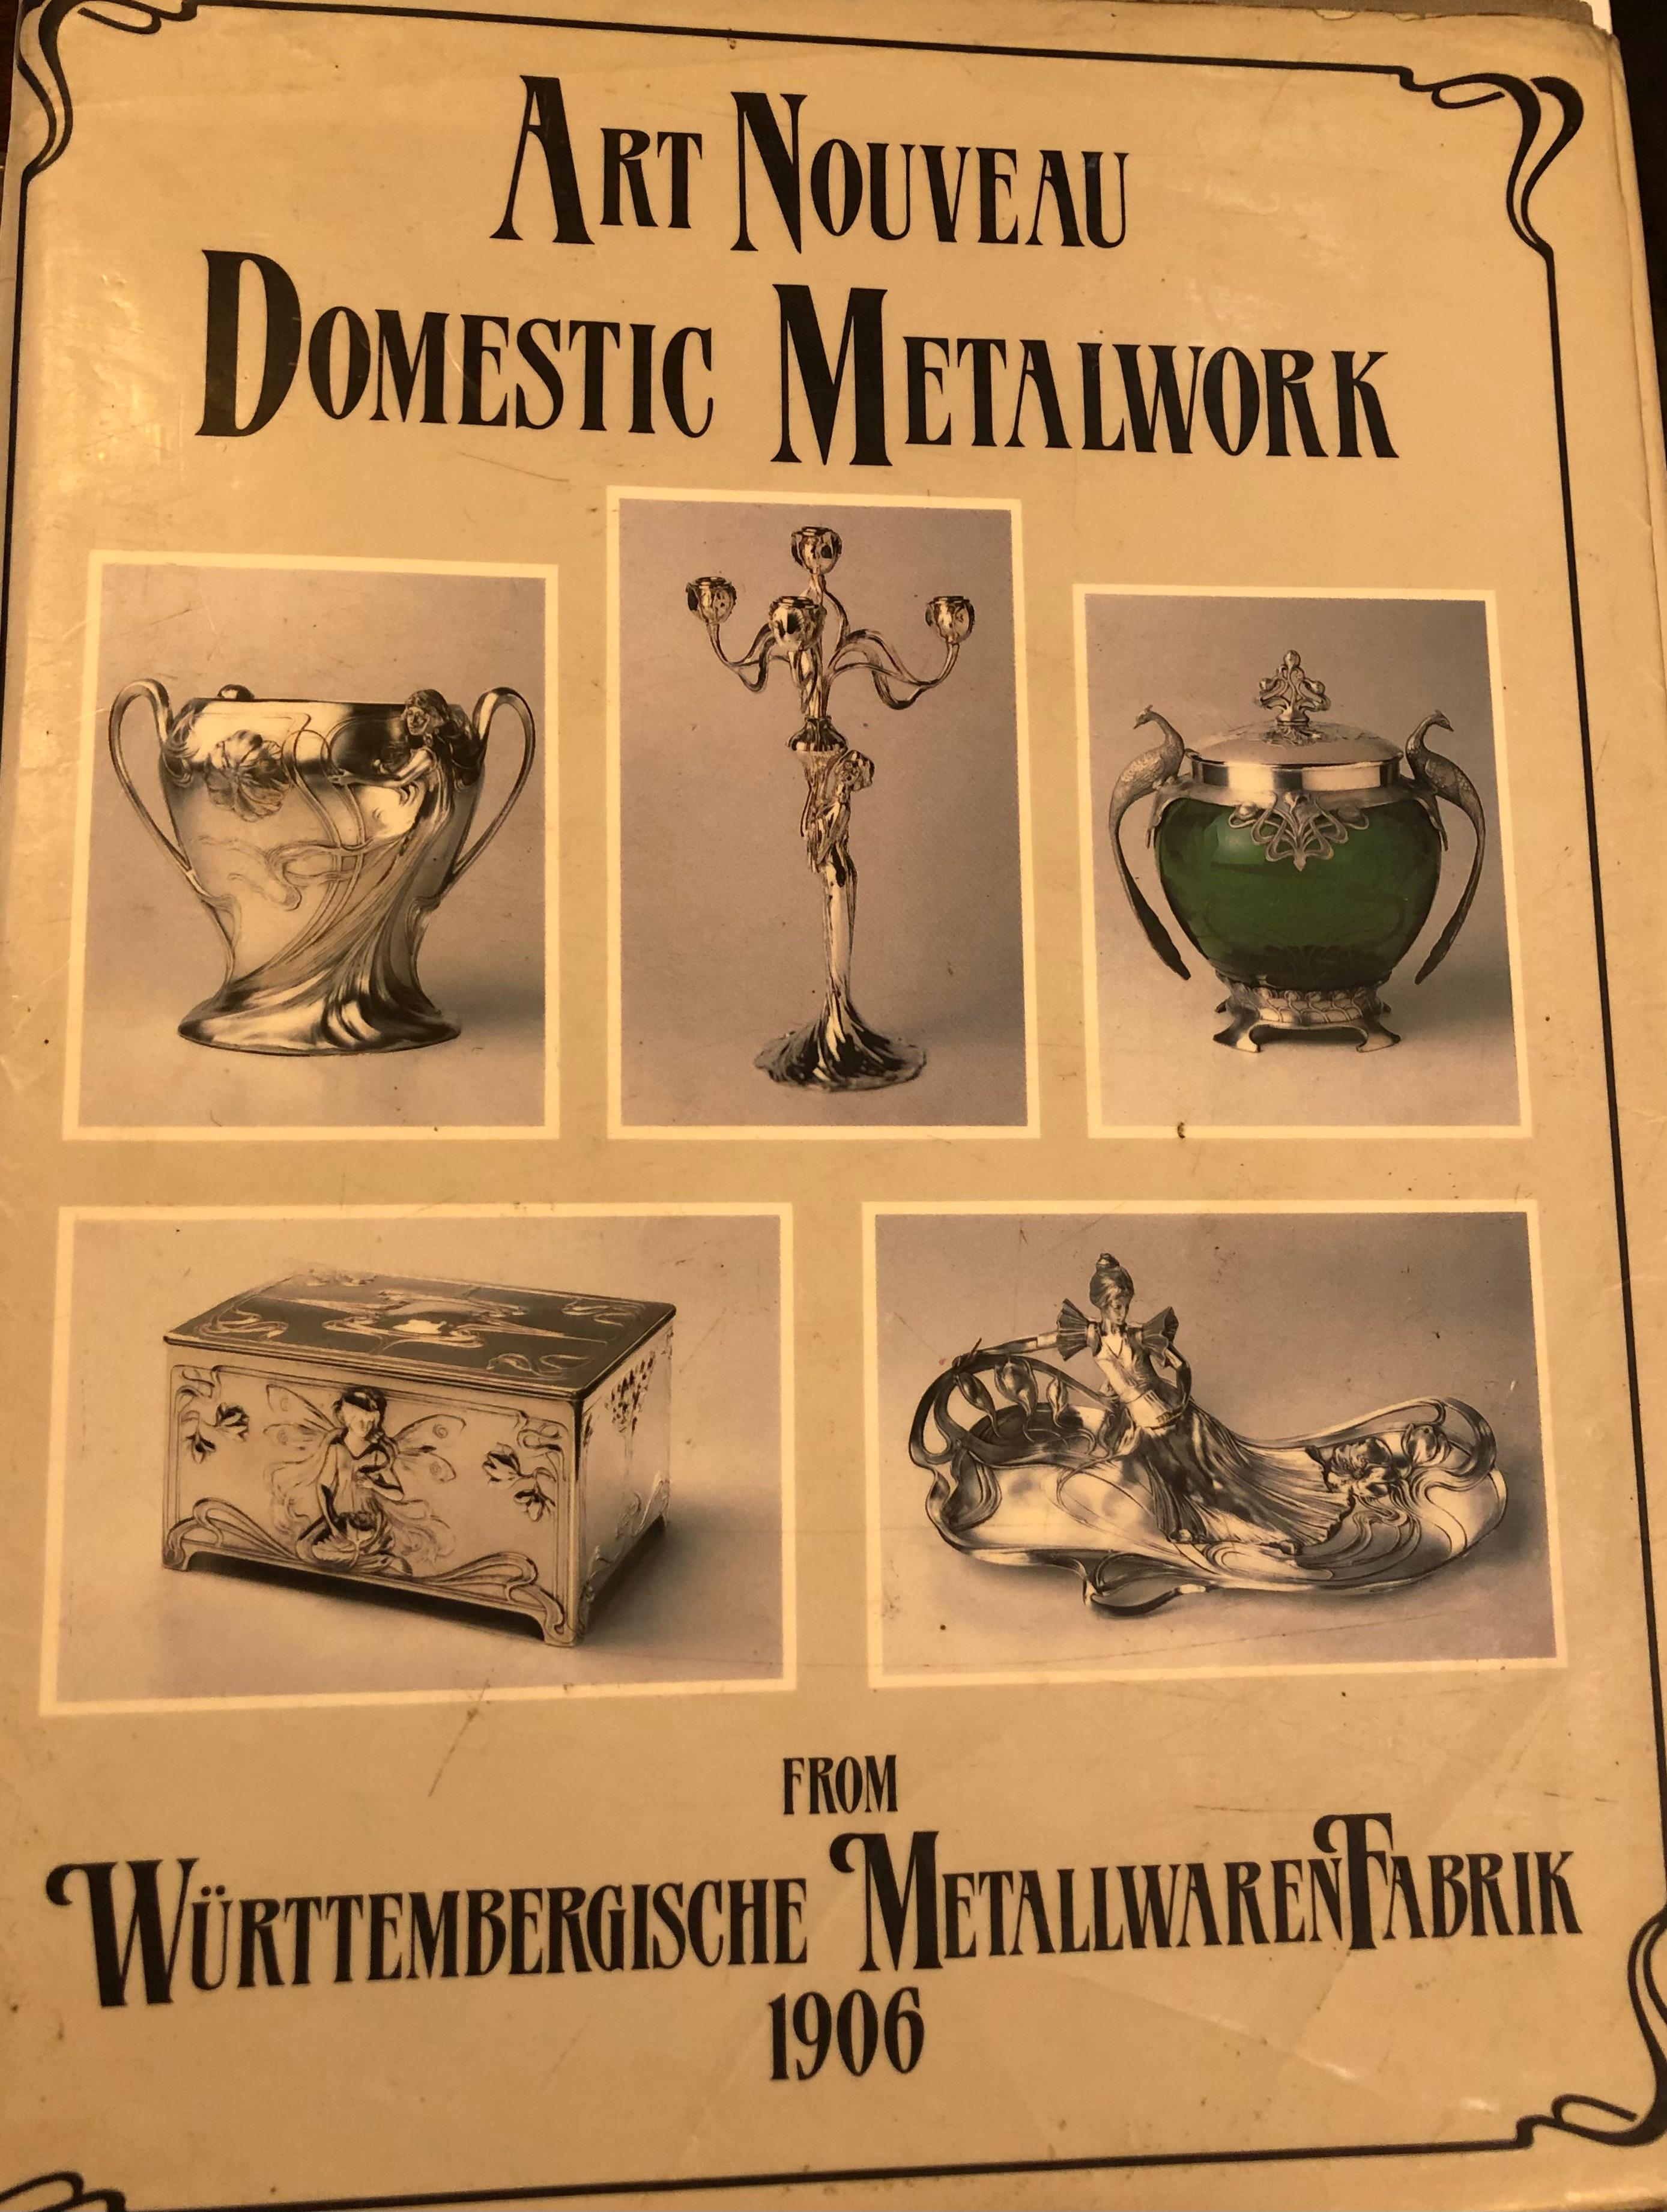 Box, Germany, Jugendstil, Art Nouveau, Liberty, 1890, Sign, WMF For Sale 5